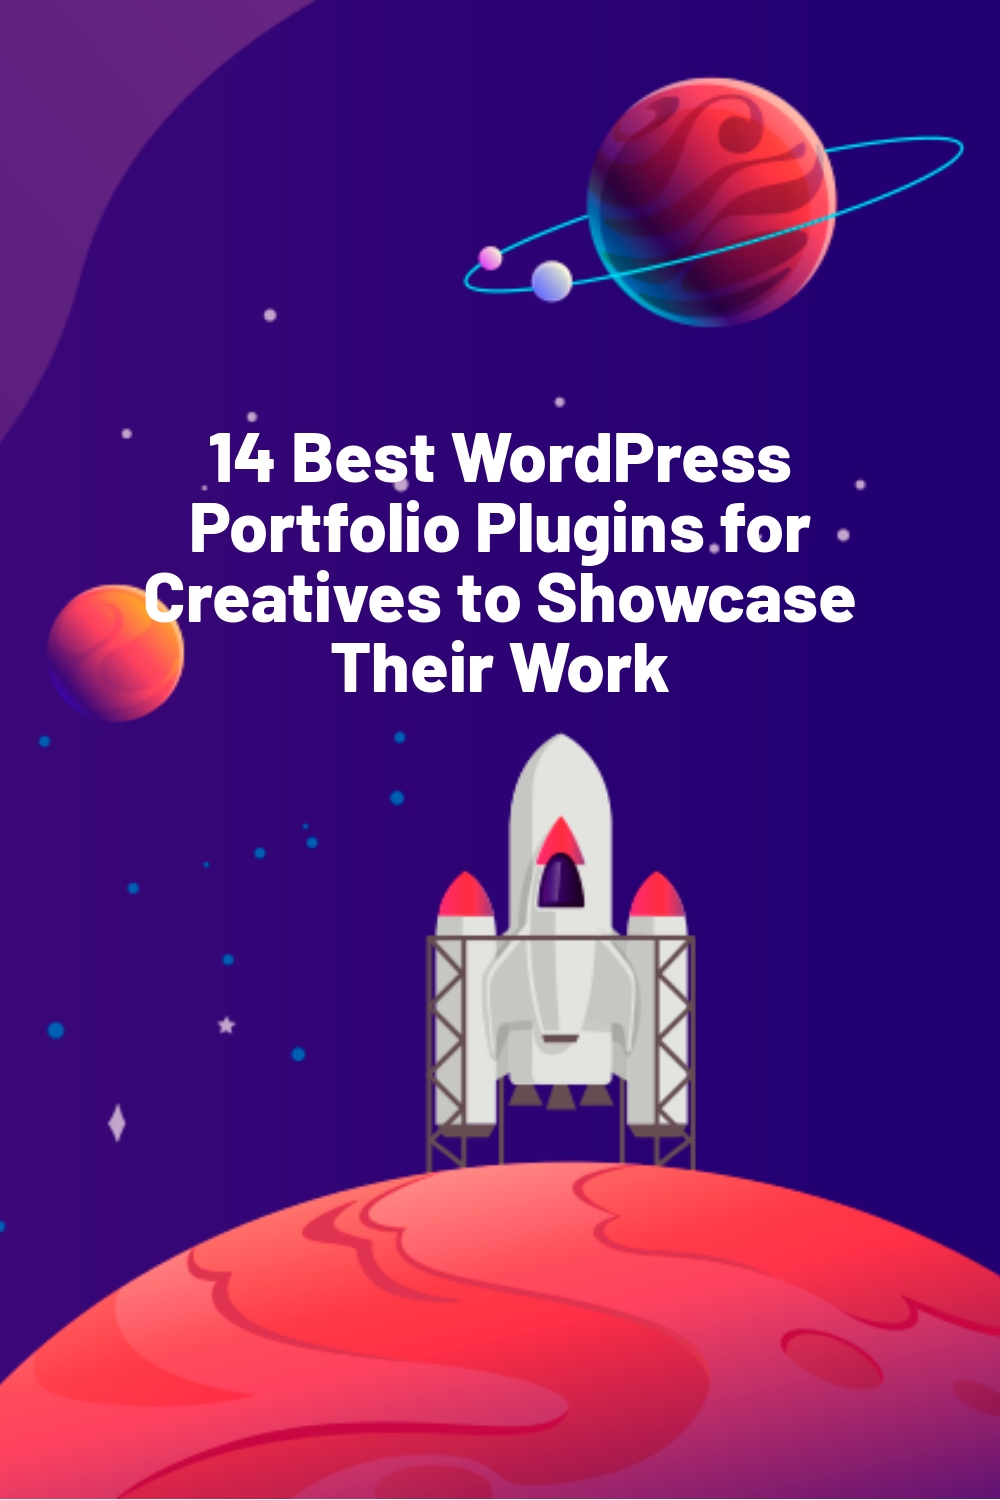 14 Best WordPress Portfolio Plugins for Creatives to Showcase Their Work